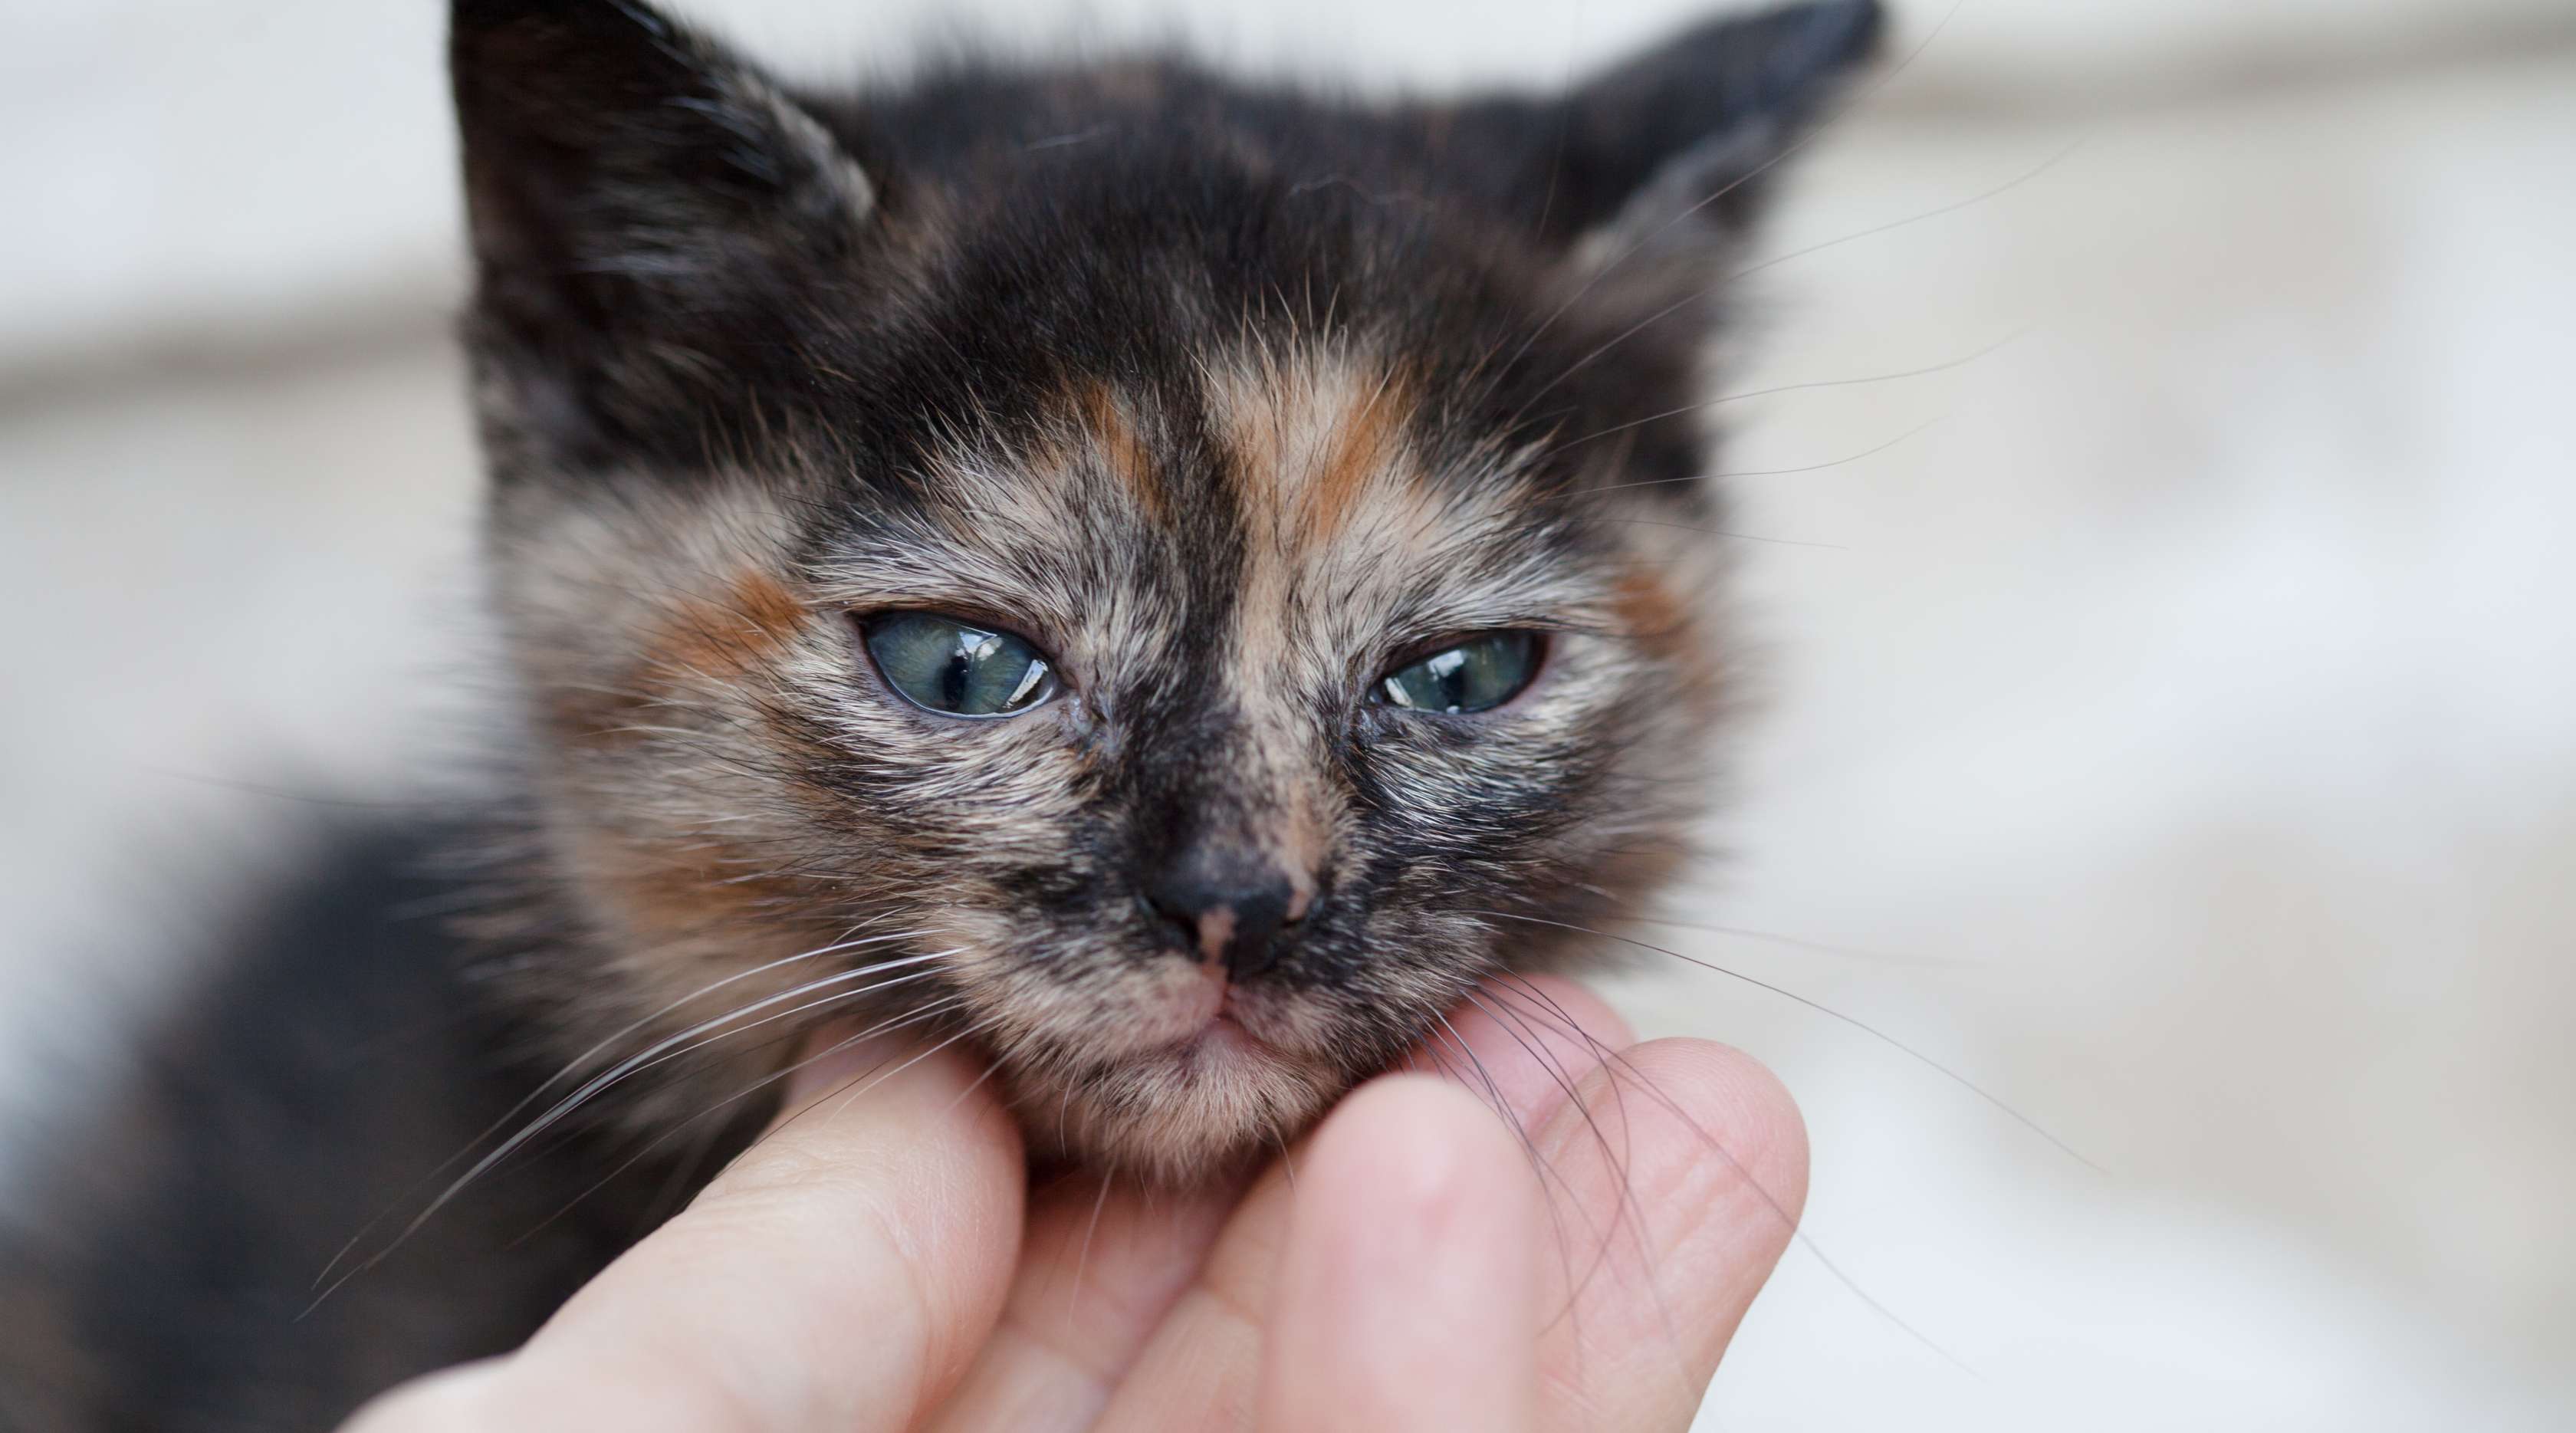  Allianz - Katzenschnupfen: Katze mit glasigen Augen